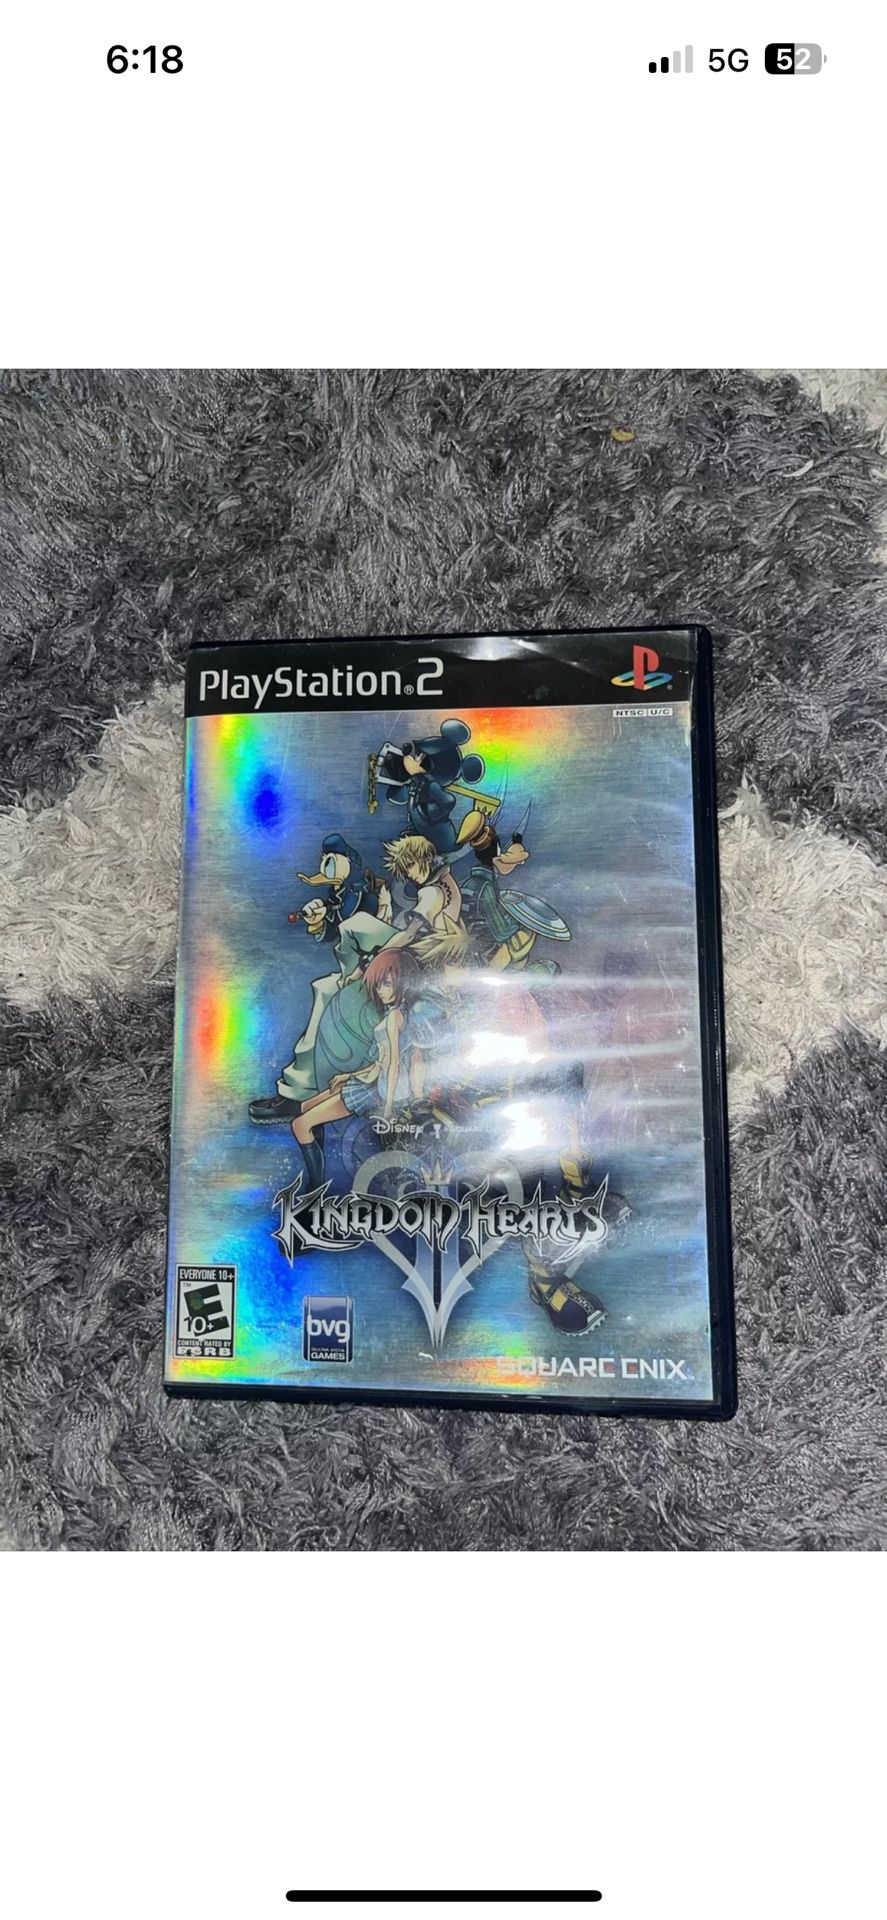 Kingdom Hearts II (PlayStation 2, 2006)